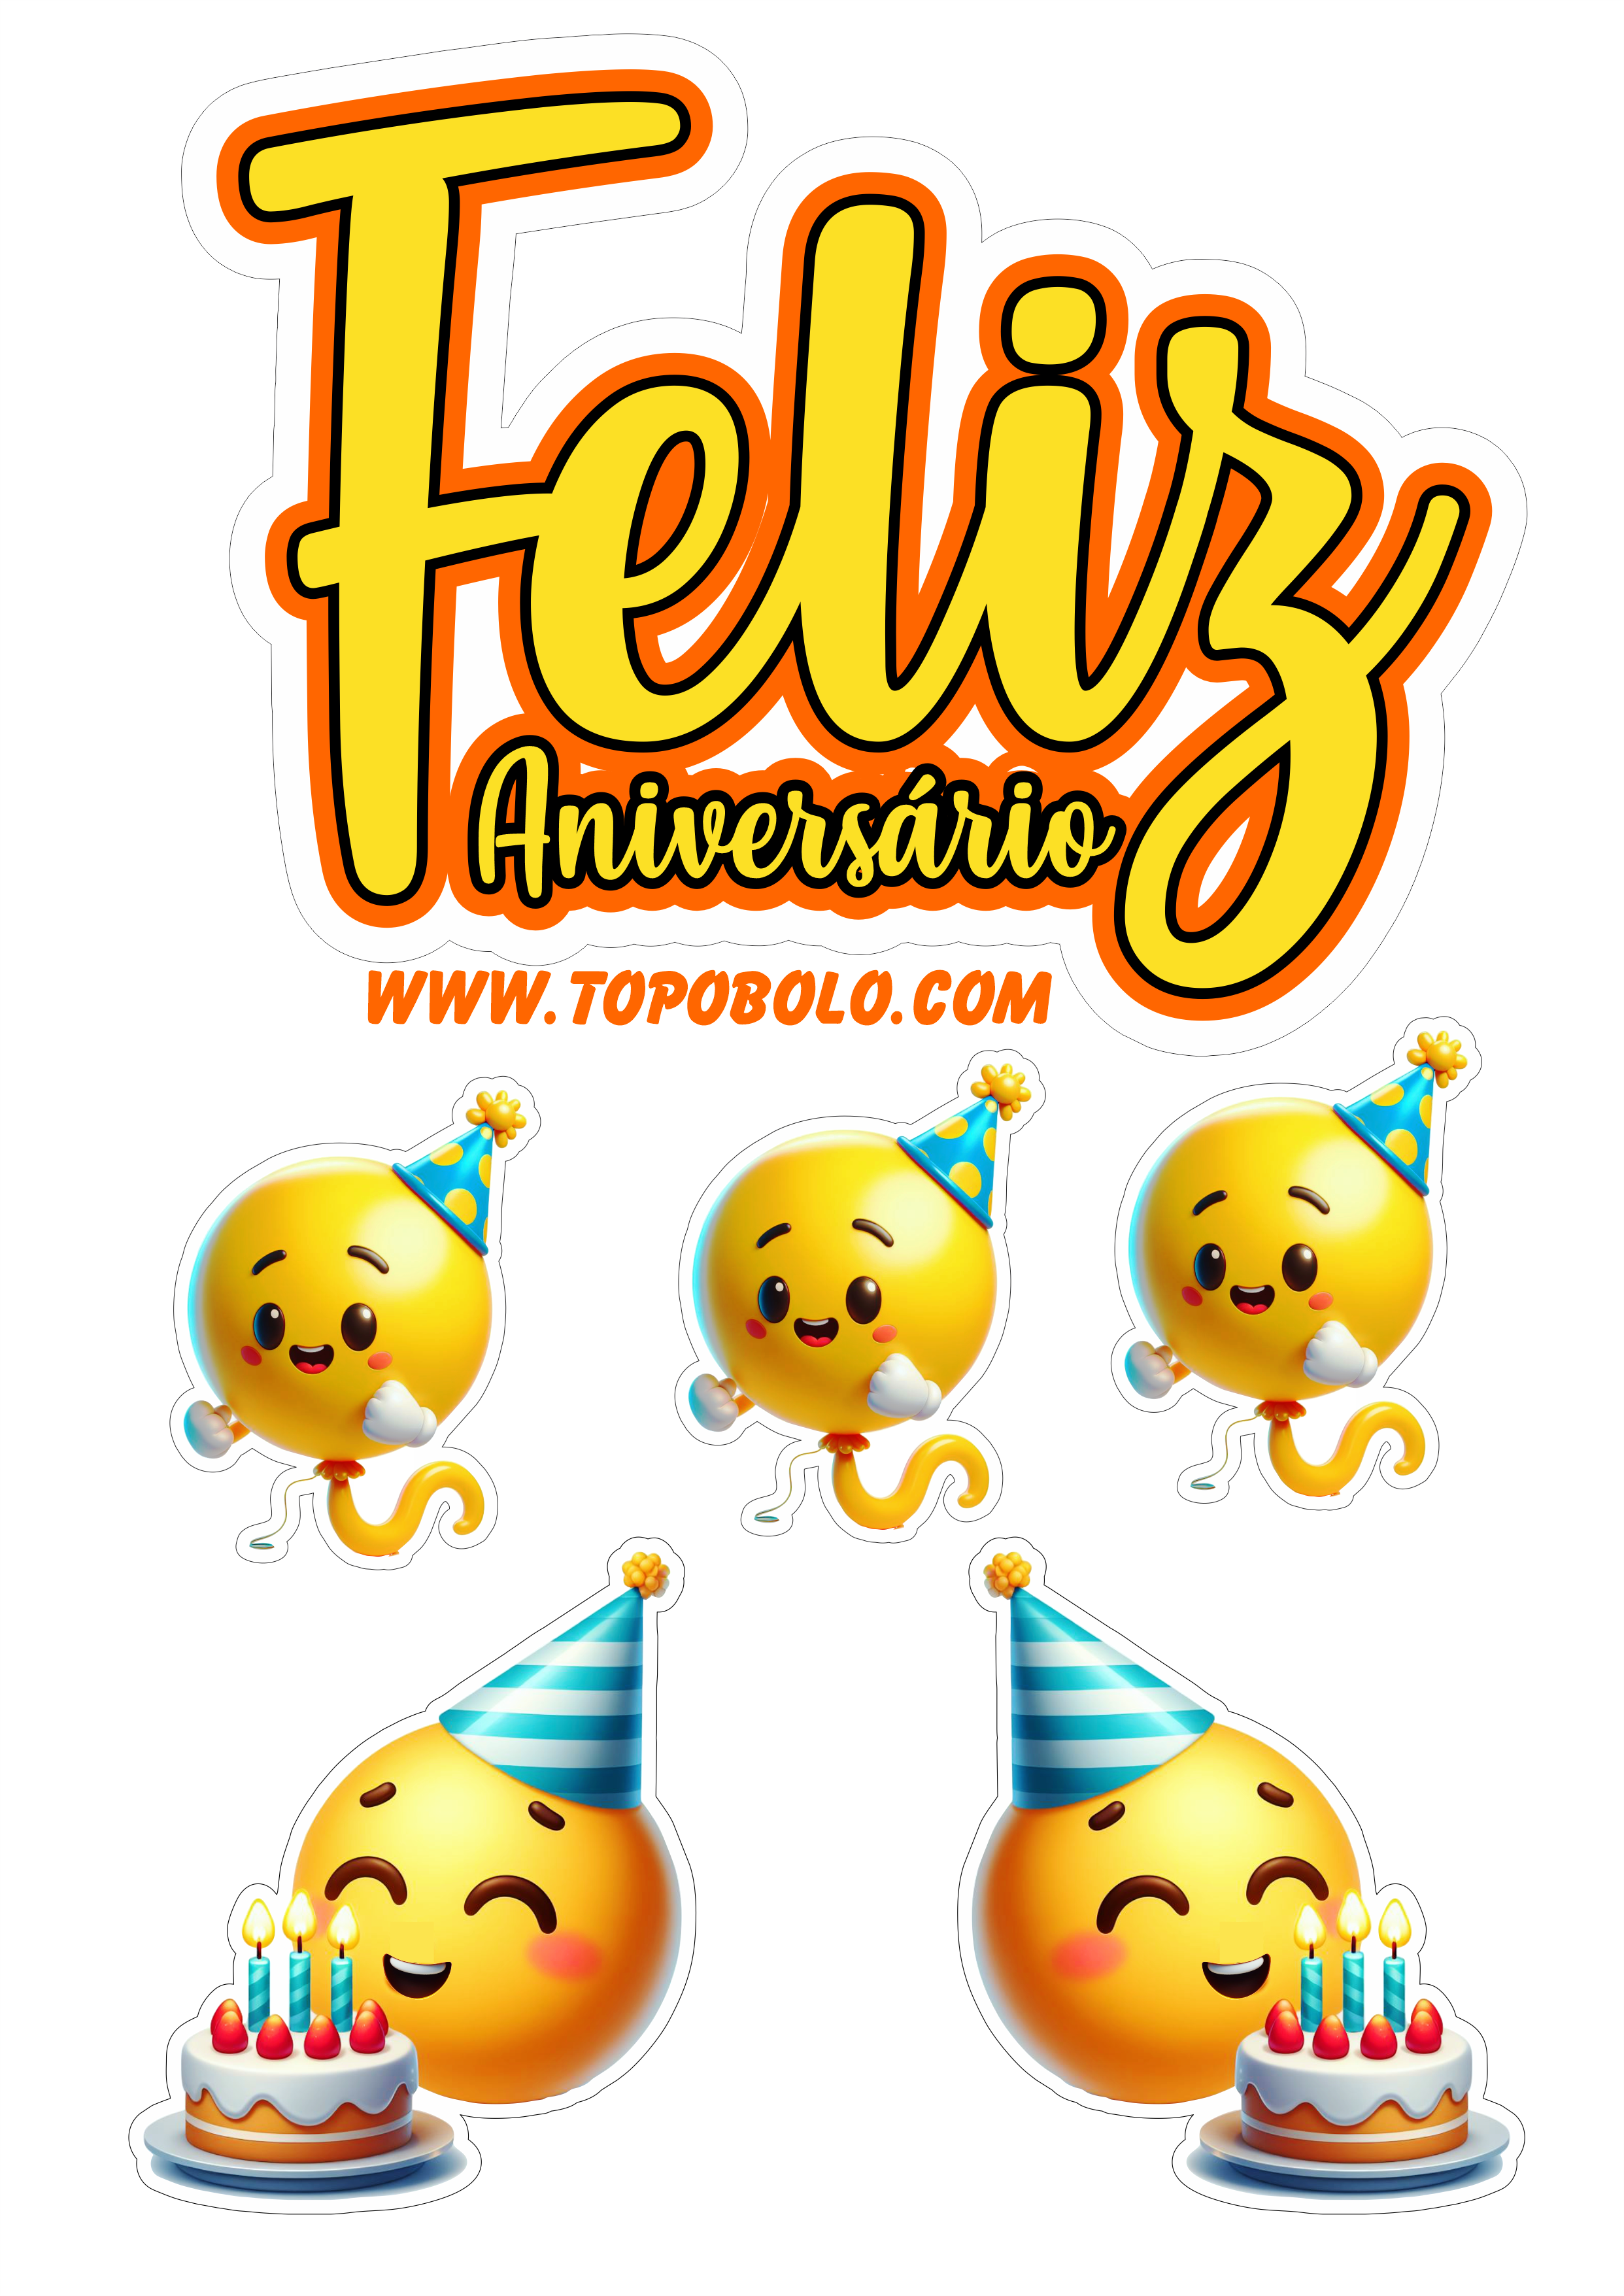 Topo de bolo feliz aniversário emojis engraçados festa pronta papelaria png